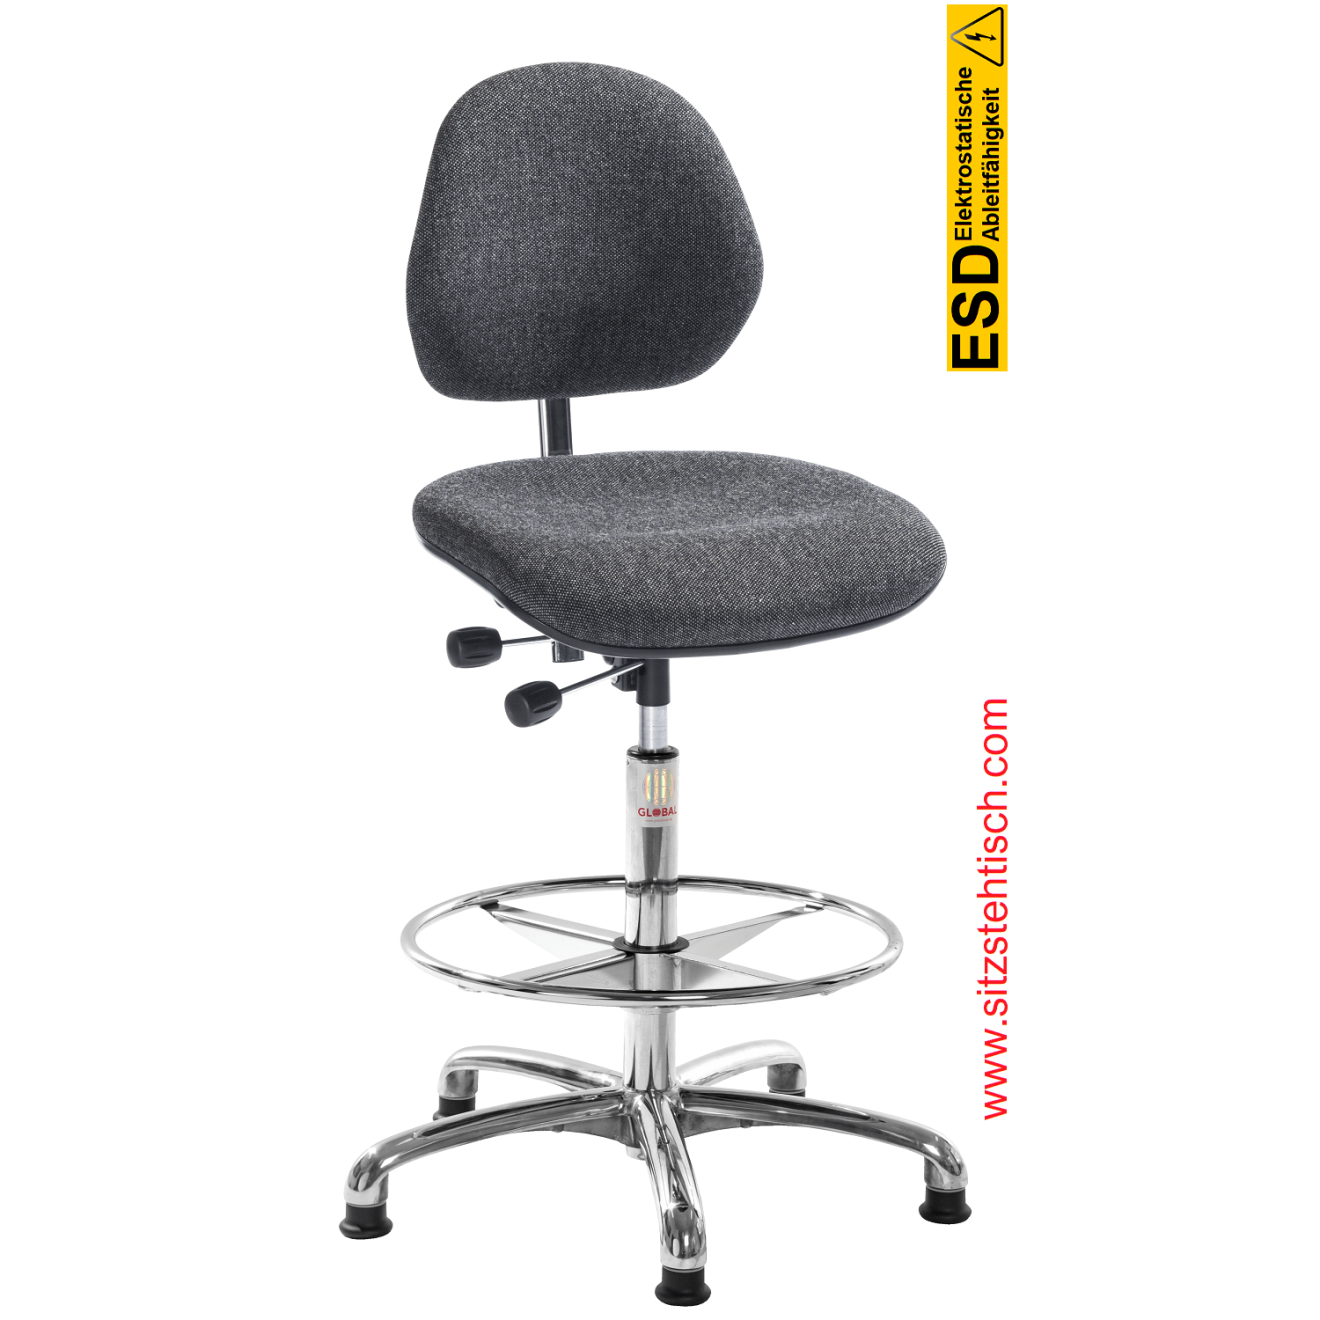 ESD-Drehstuhl "Aktiv ESD" - Fussring - Sitz und Rückenlehne sind mit einem speziellen Stoff bezogen, Neigung Sitz und Rückenlehne stufenlos verstellbar, Fußkreuz aus Aluminium, elektrisch leitfähige Gleiter Ø 50 mm - 5 Jahre Garantie